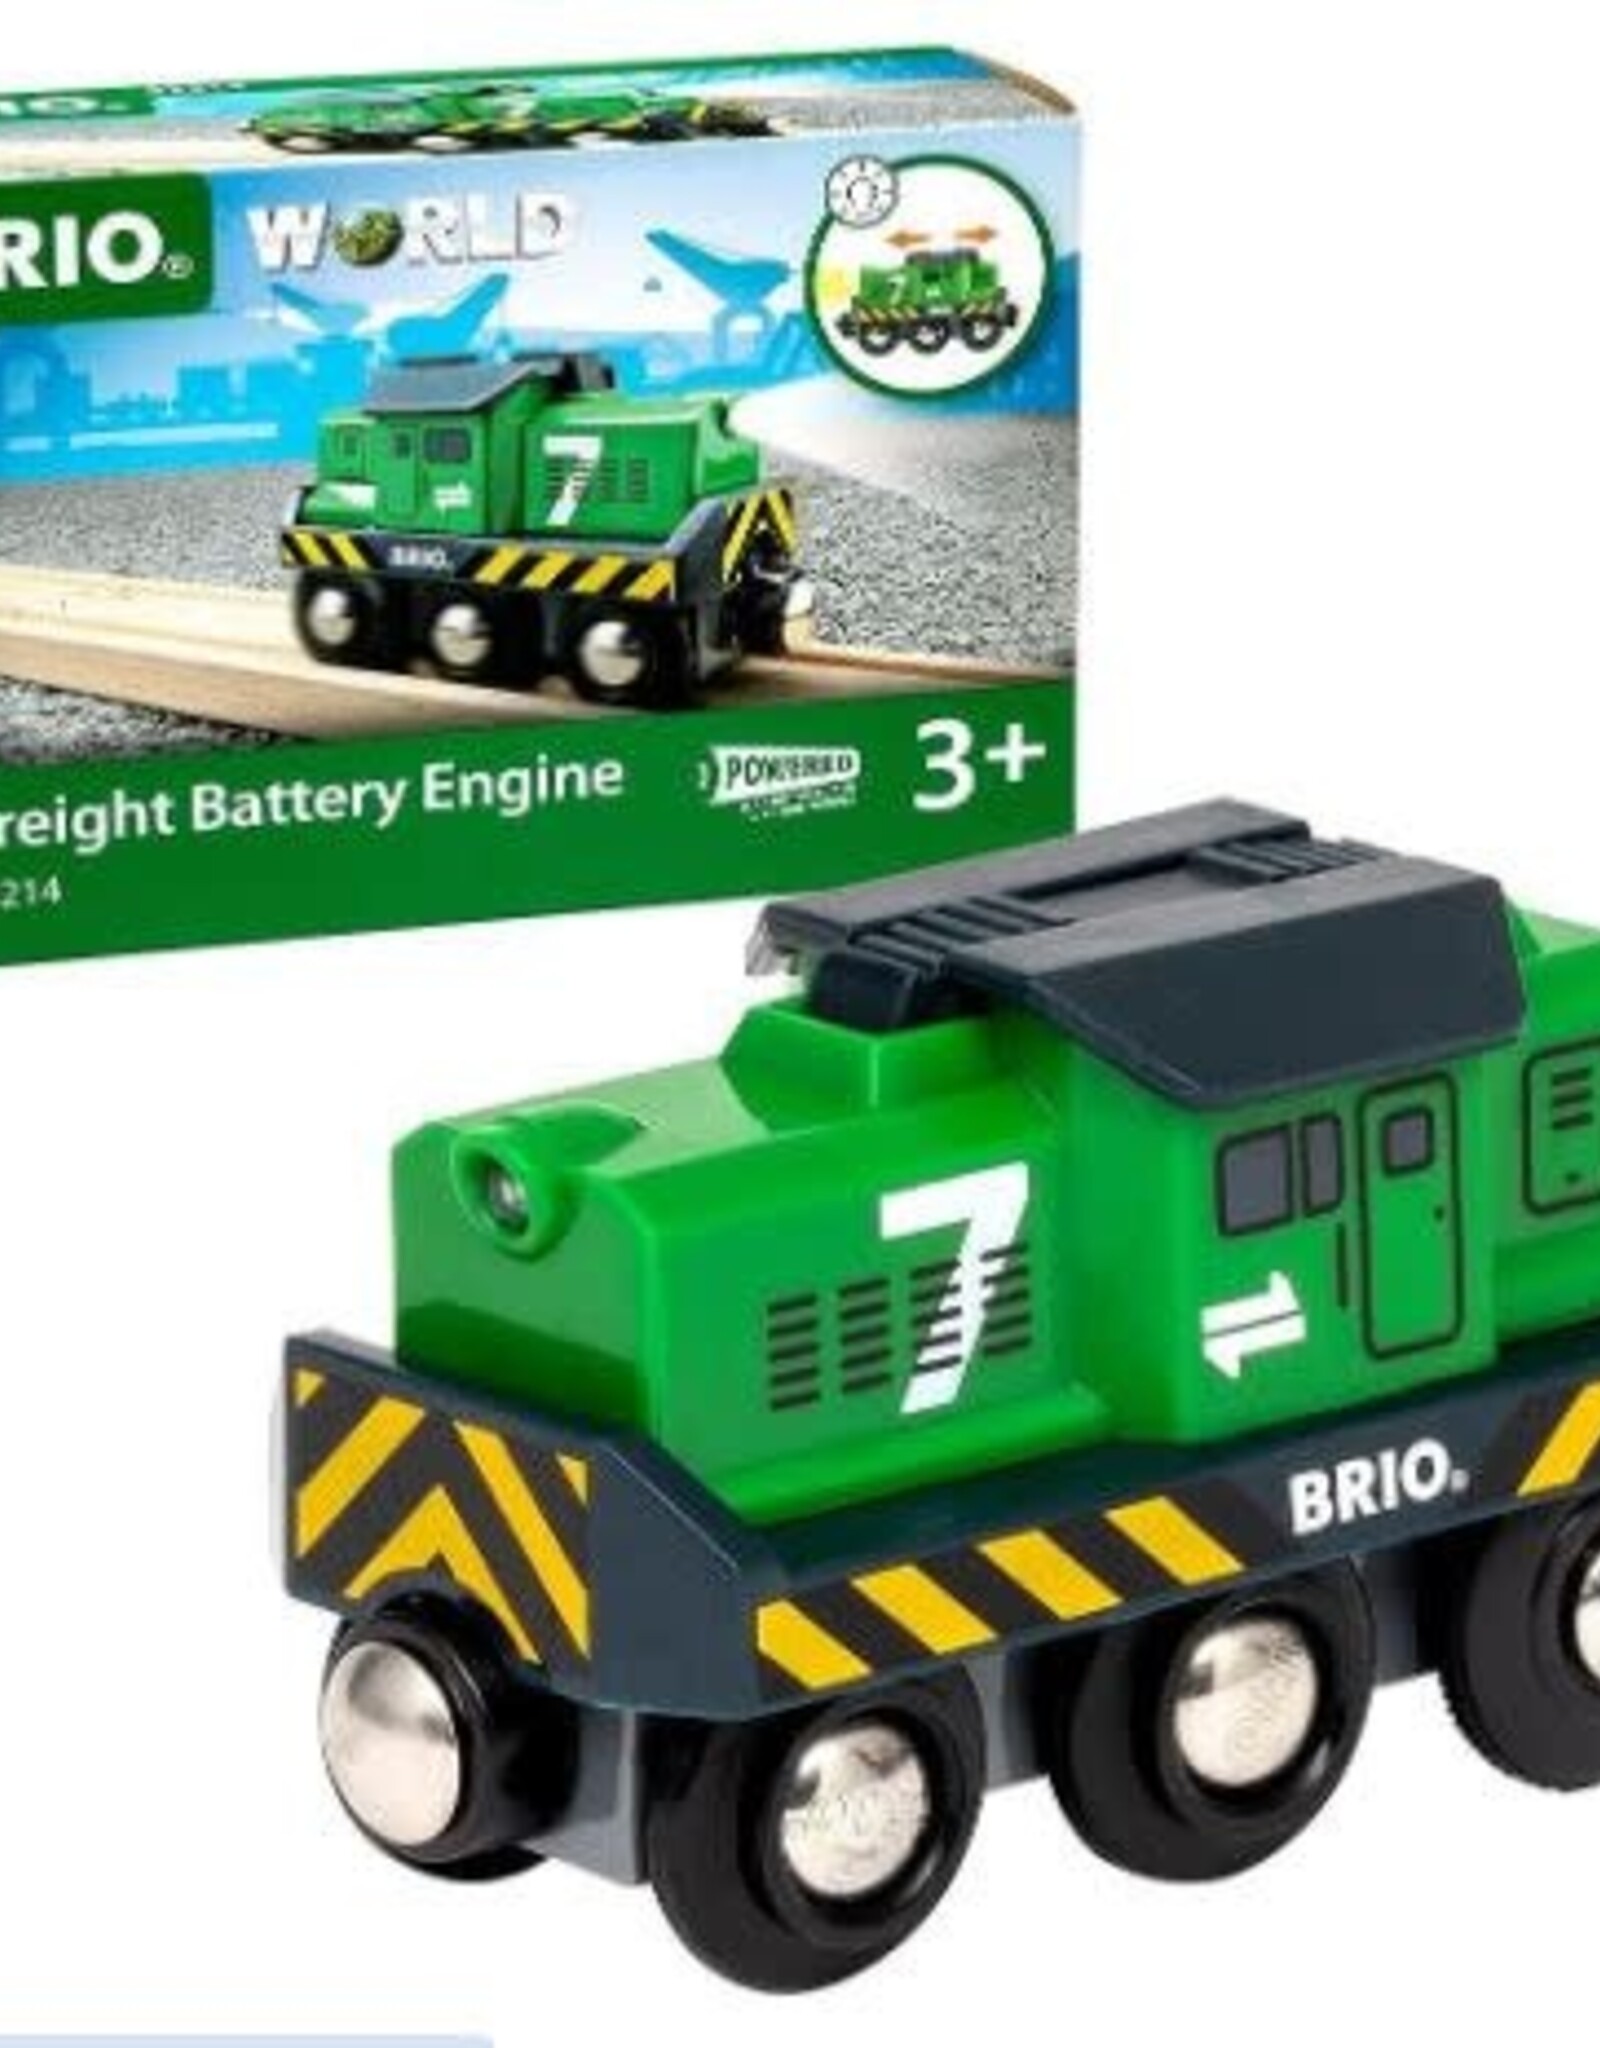 BRIO BRIO Freight Battery Engine